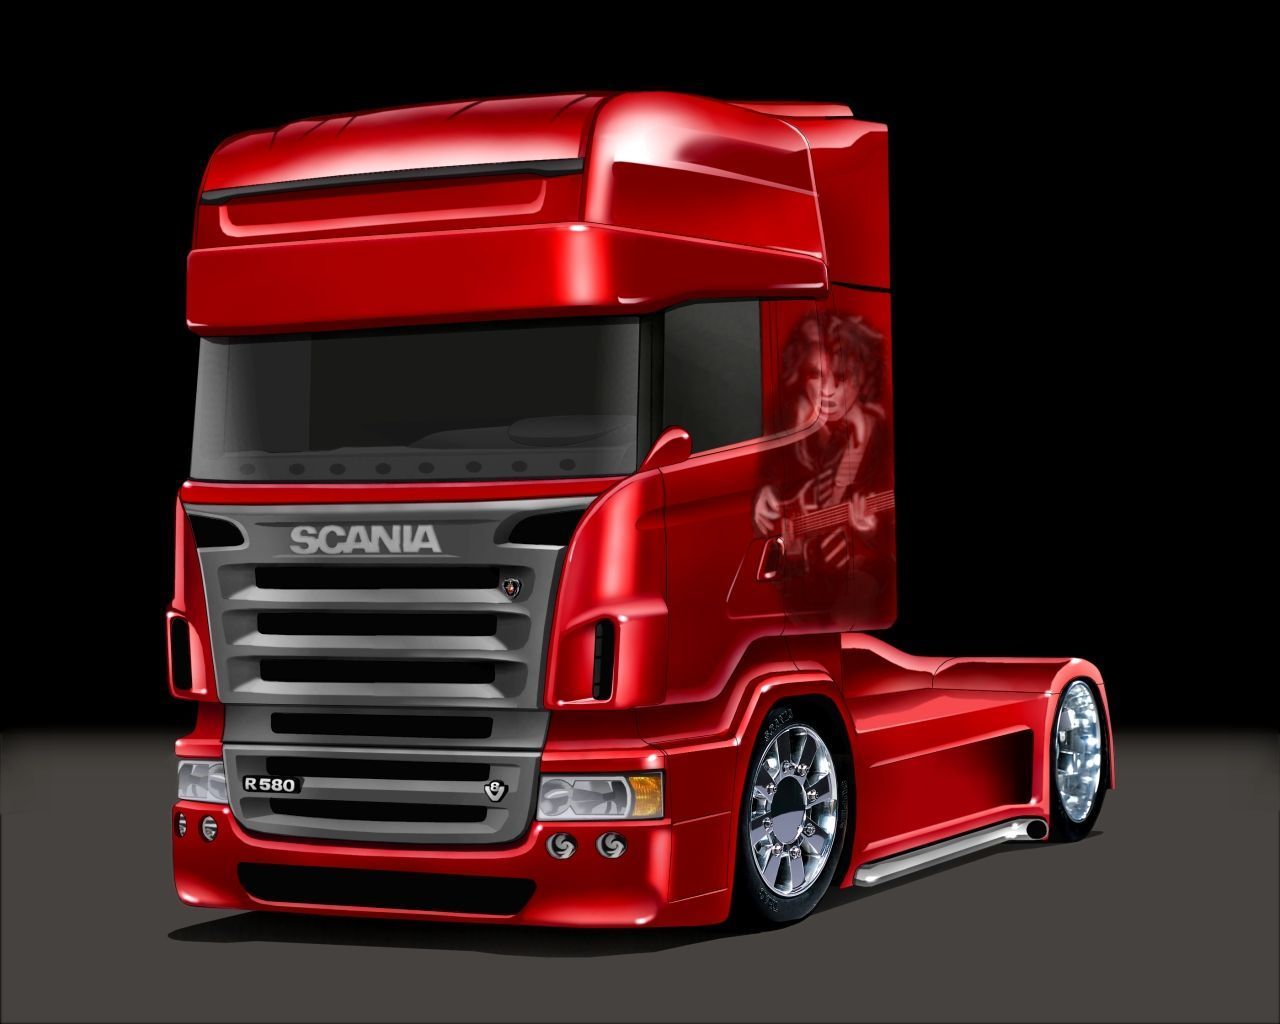 Scania Truck Wallpaper Full HD. Total .totalupdate.blogspot.com